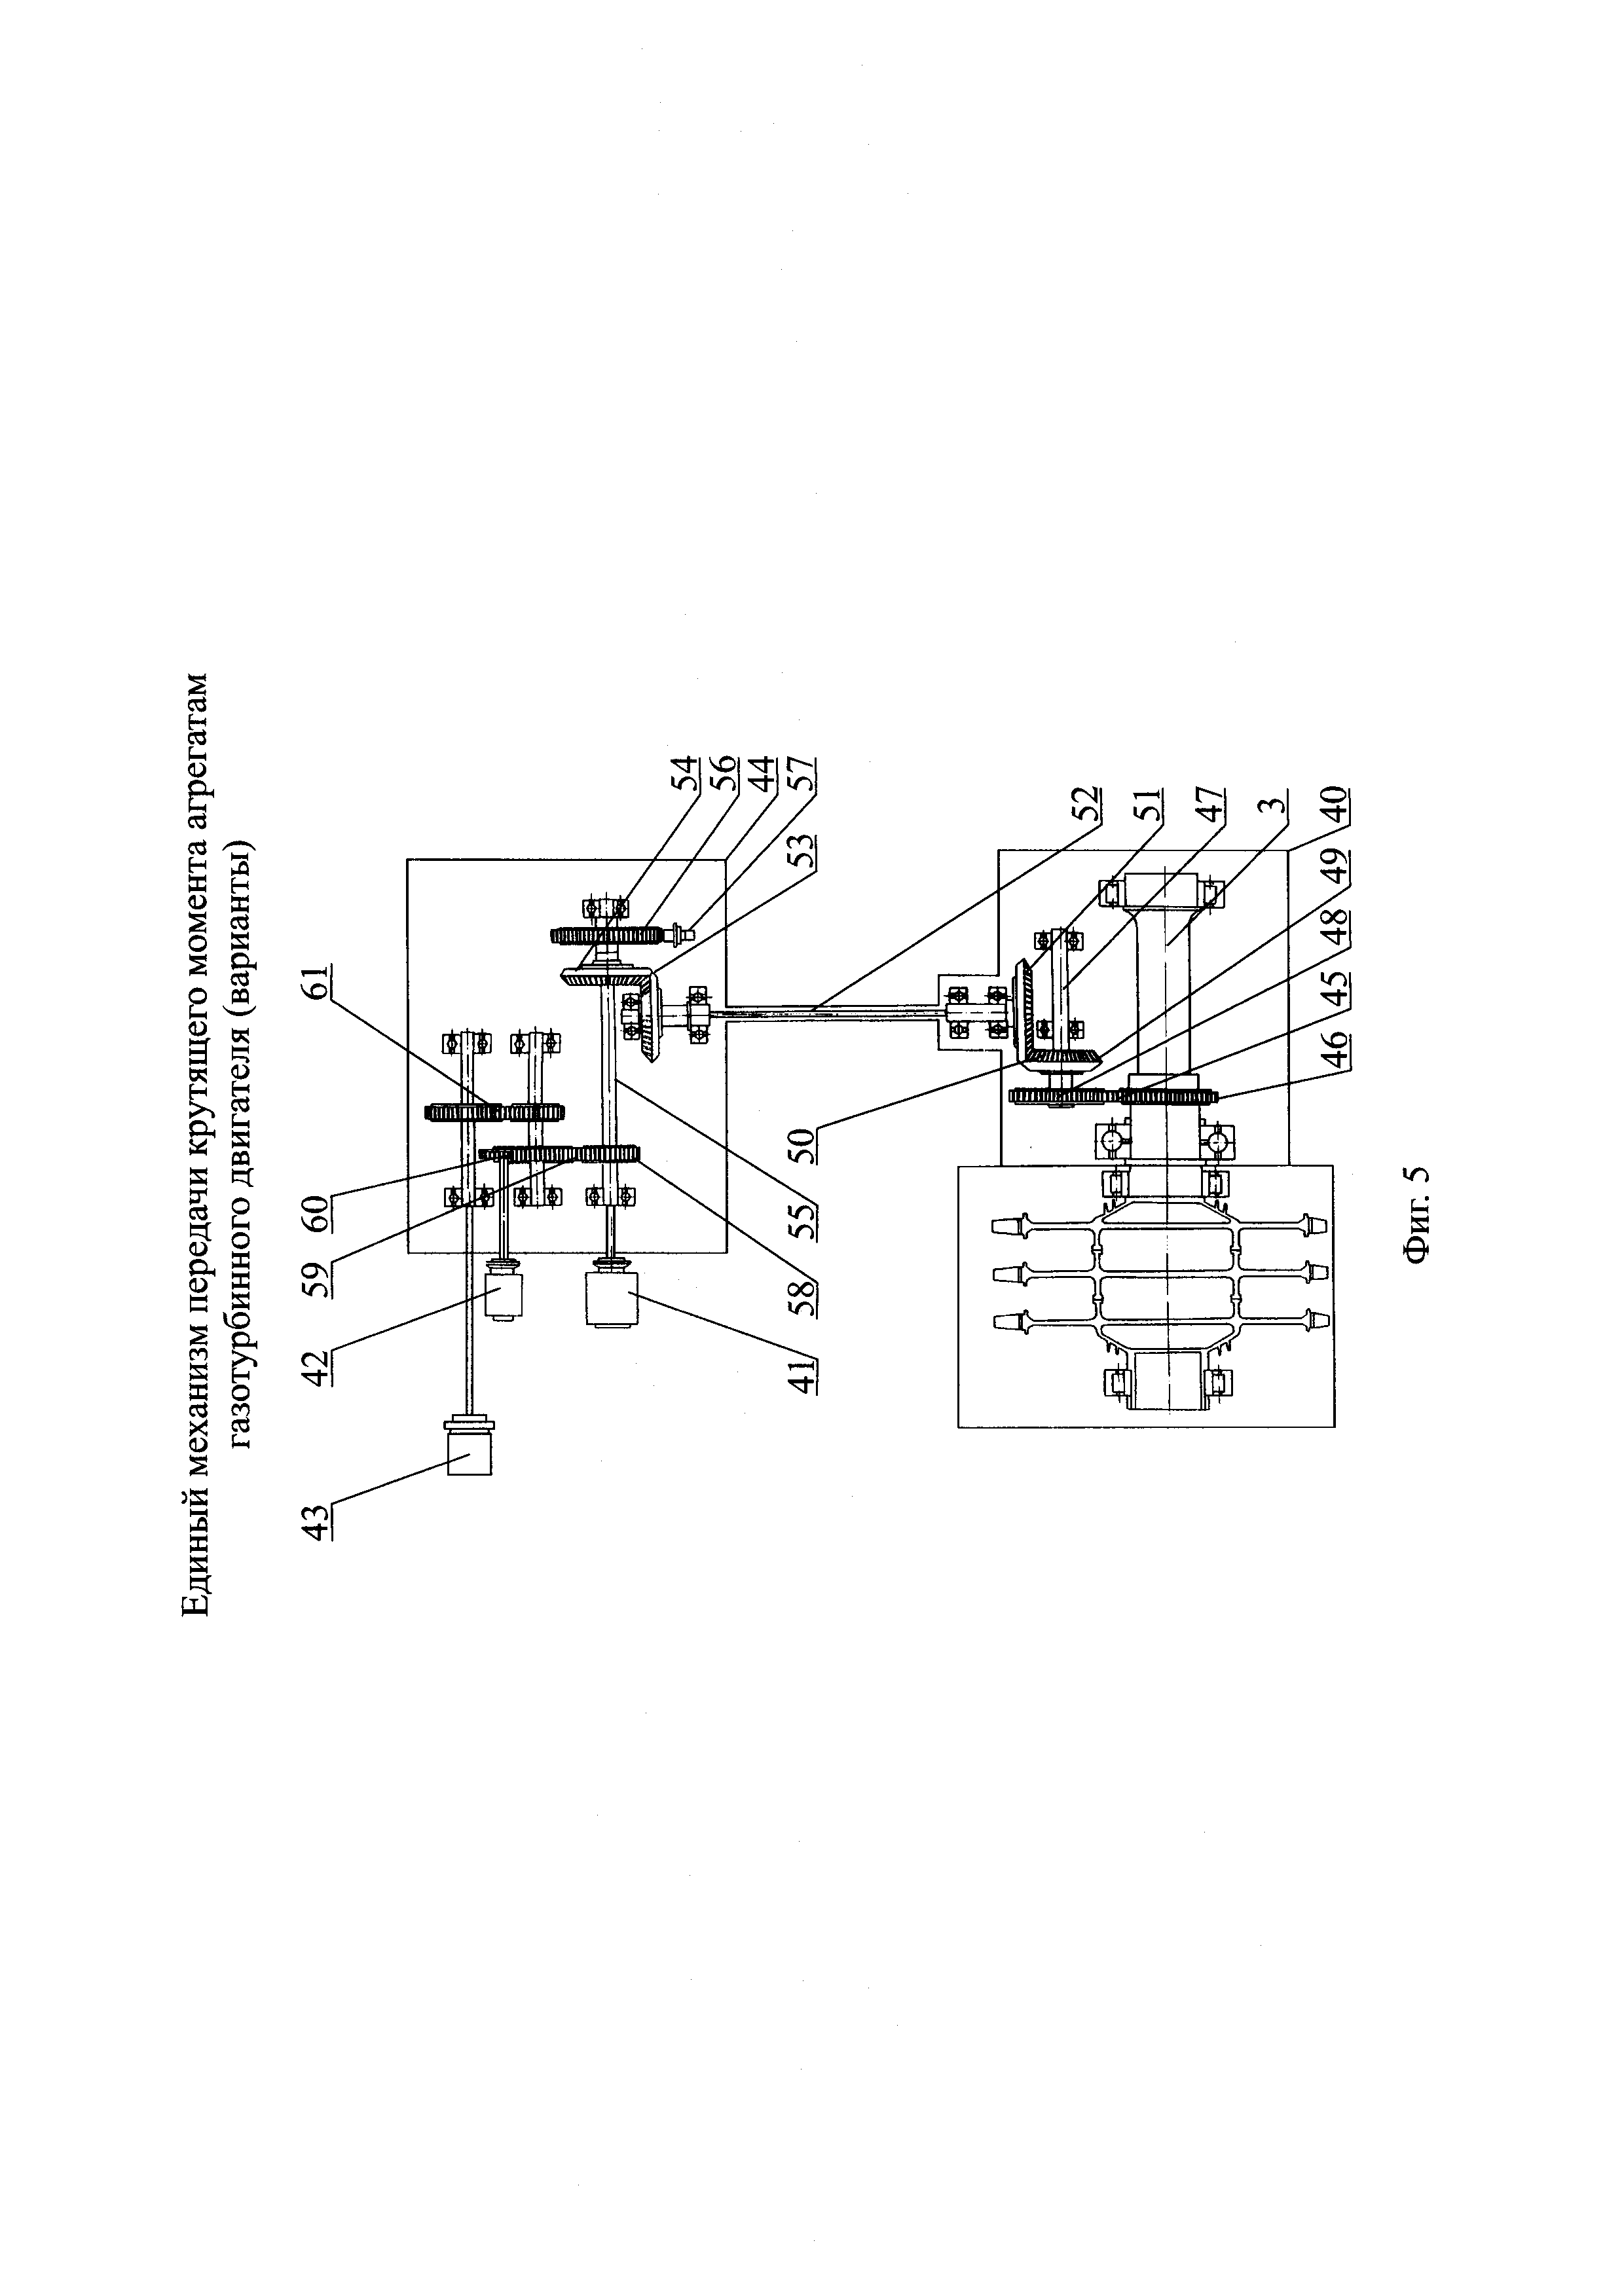 Единый механизм передачи крутящего момента агрегатам газотурбинного двигателя (варианты)